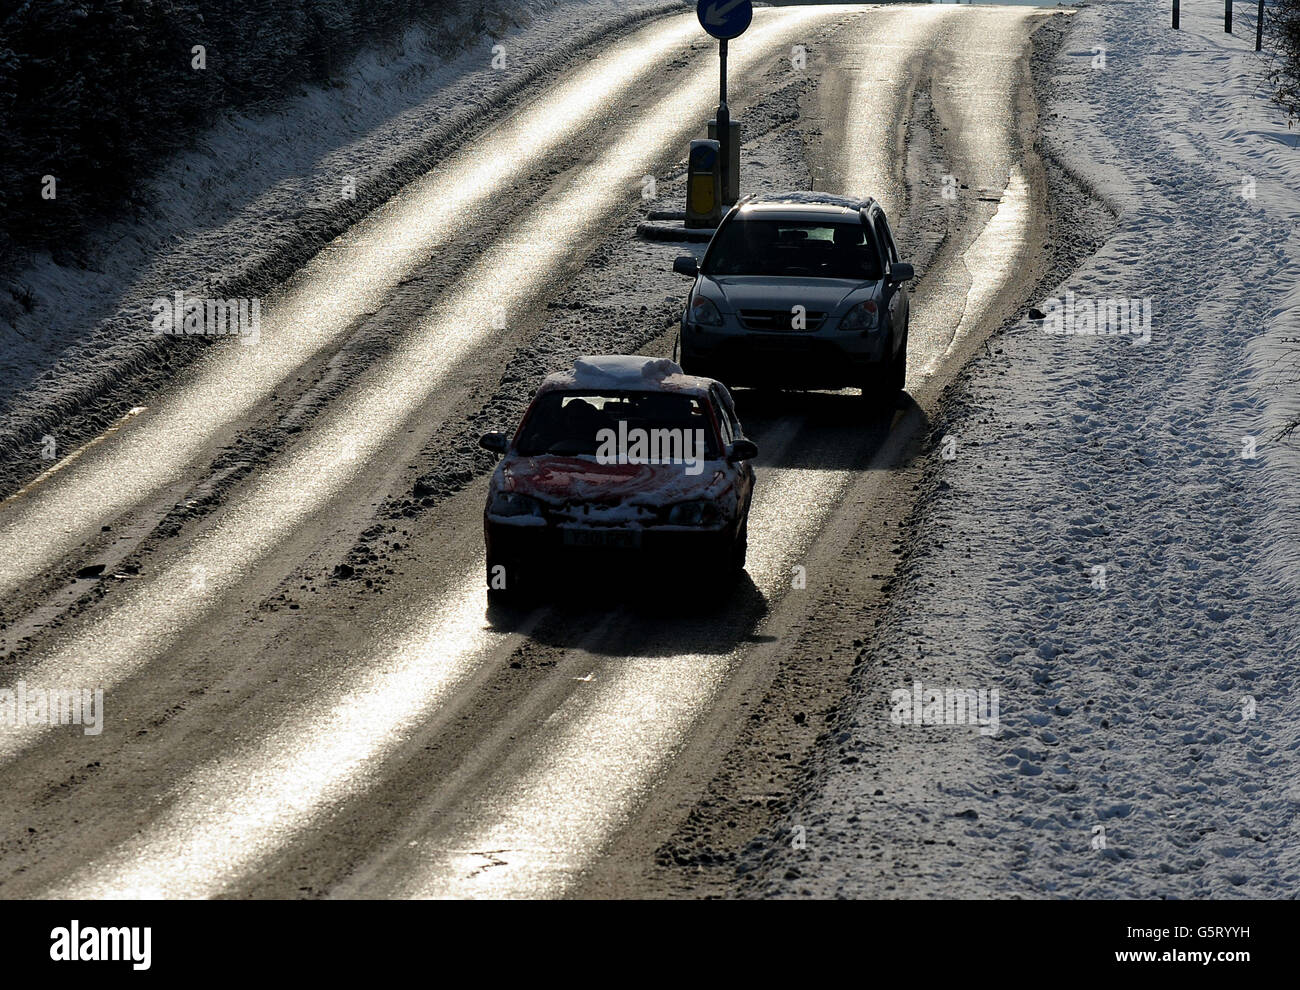 Gli automobilisti procedono lentamente su strade ghiacciate a Moira, nel Derbyshire, mentre il tempo invernale continua in tutto il Regno Unito. Foto Stock